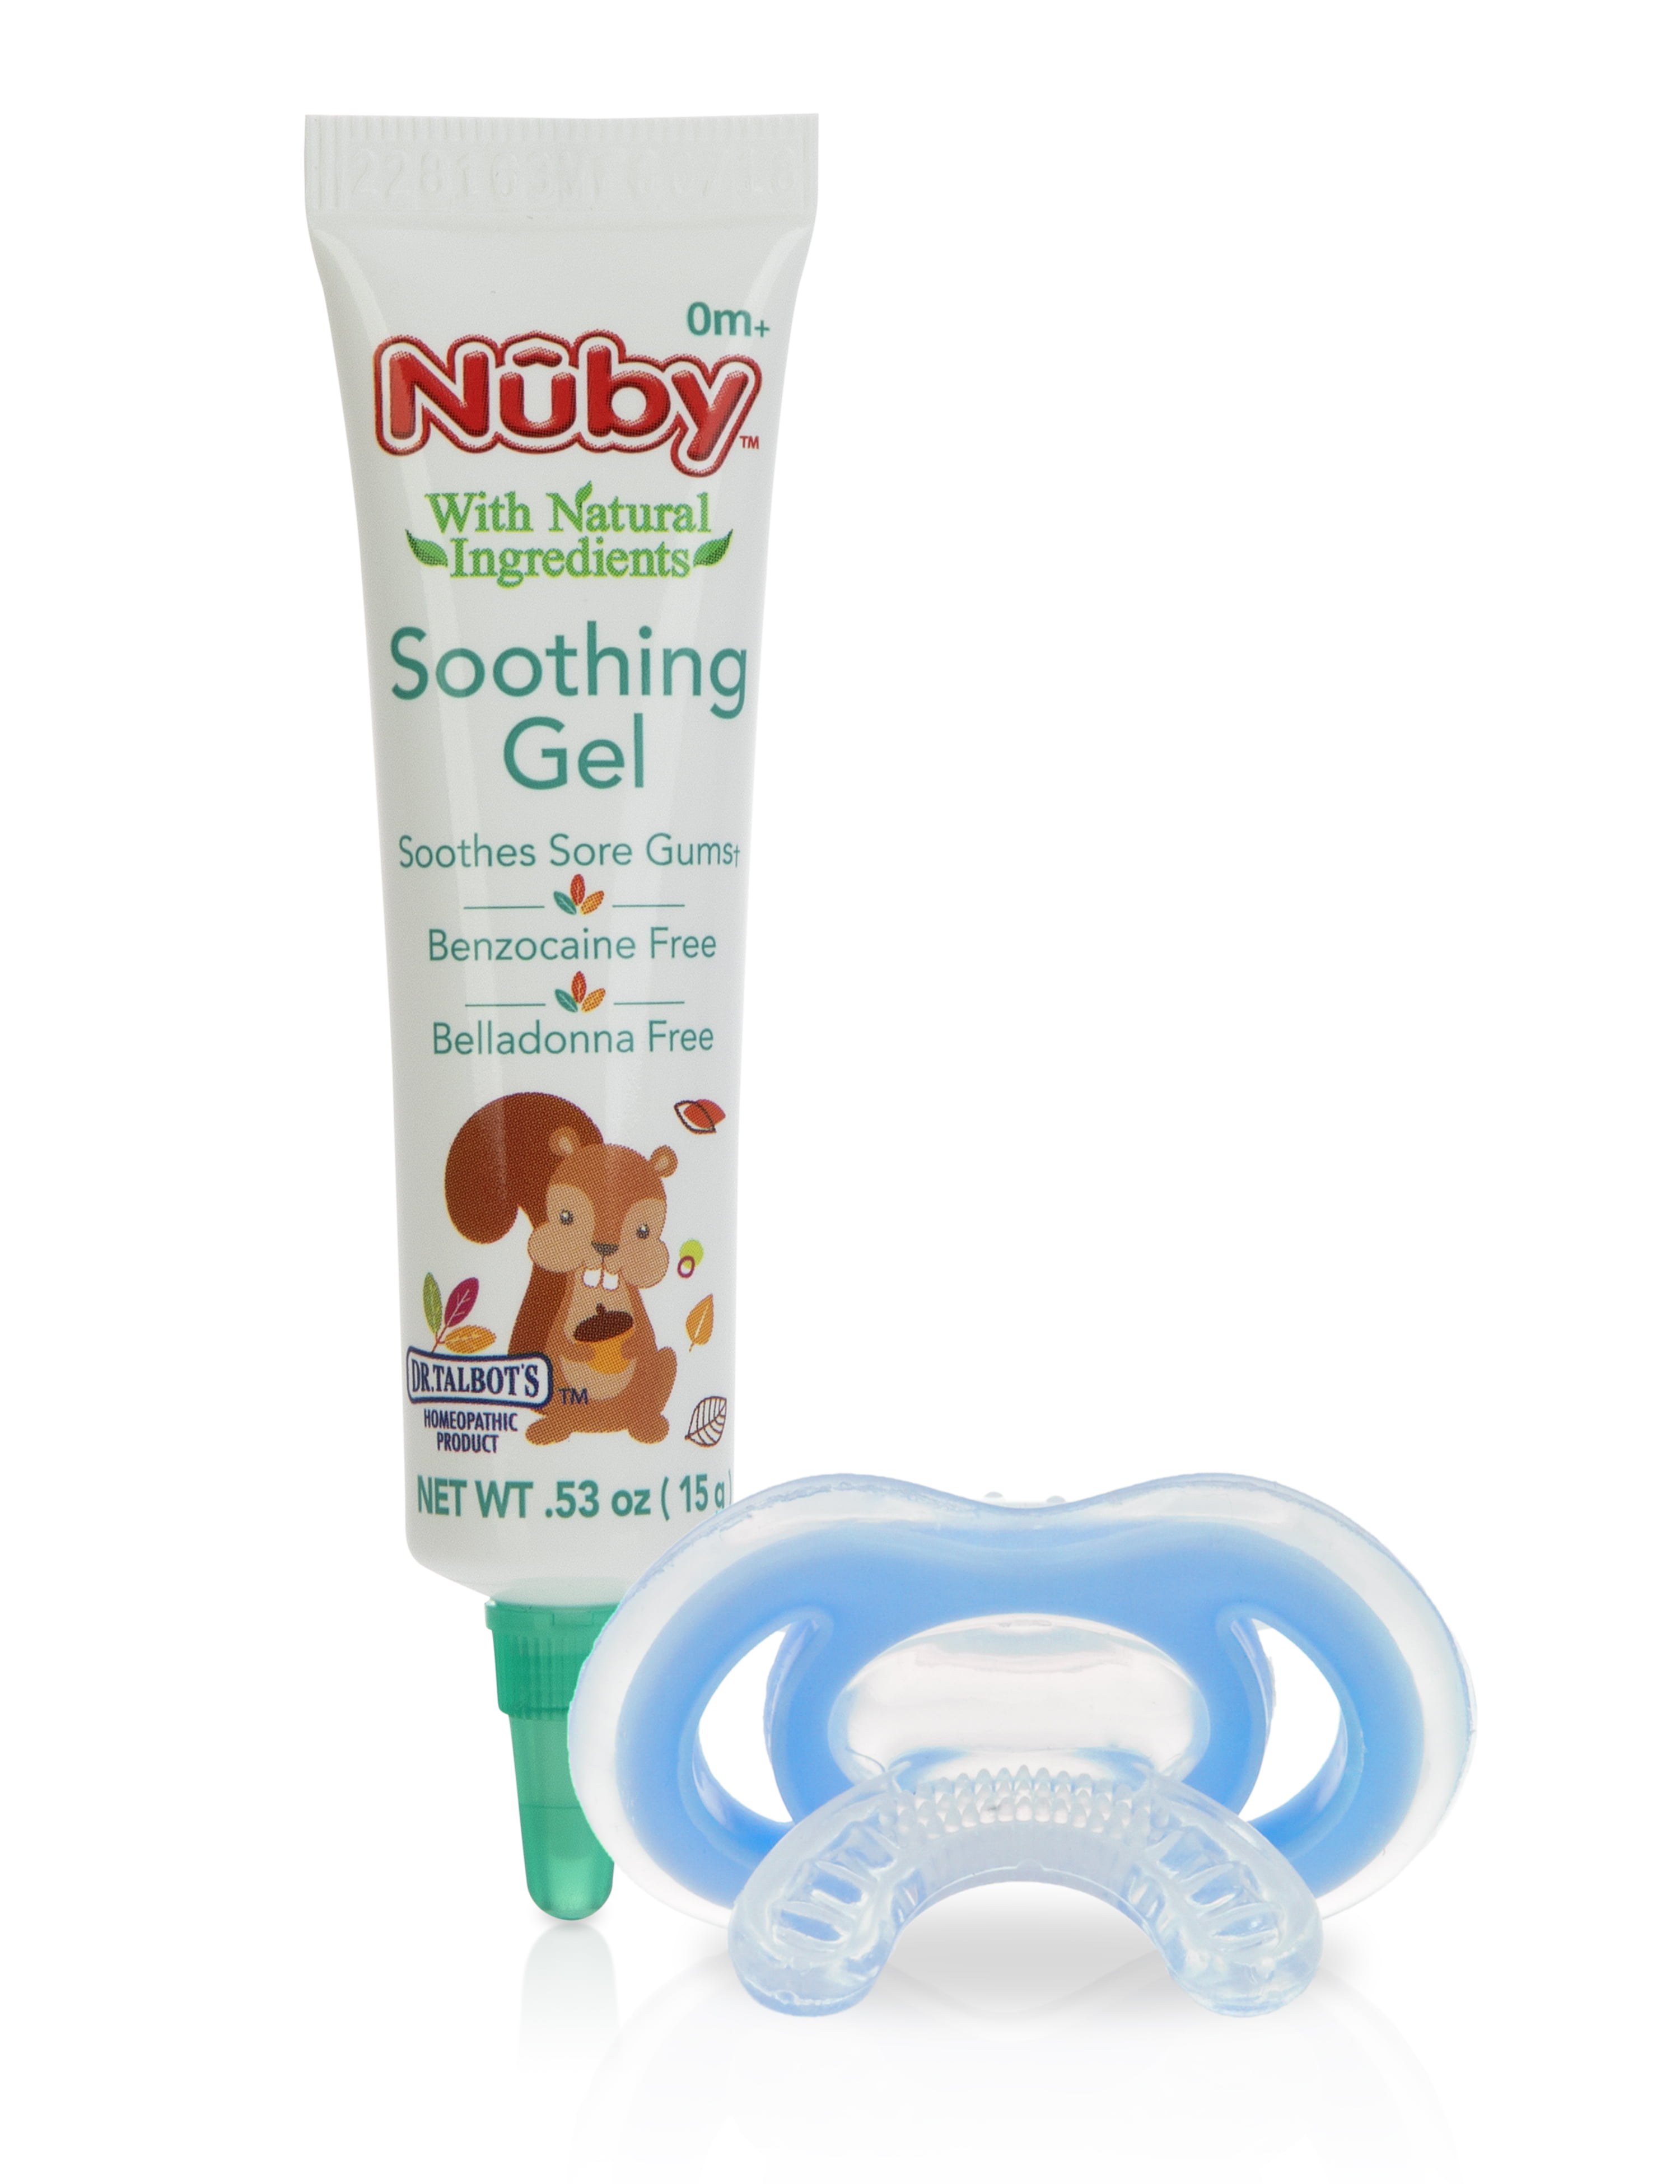 nuby natural teething gel